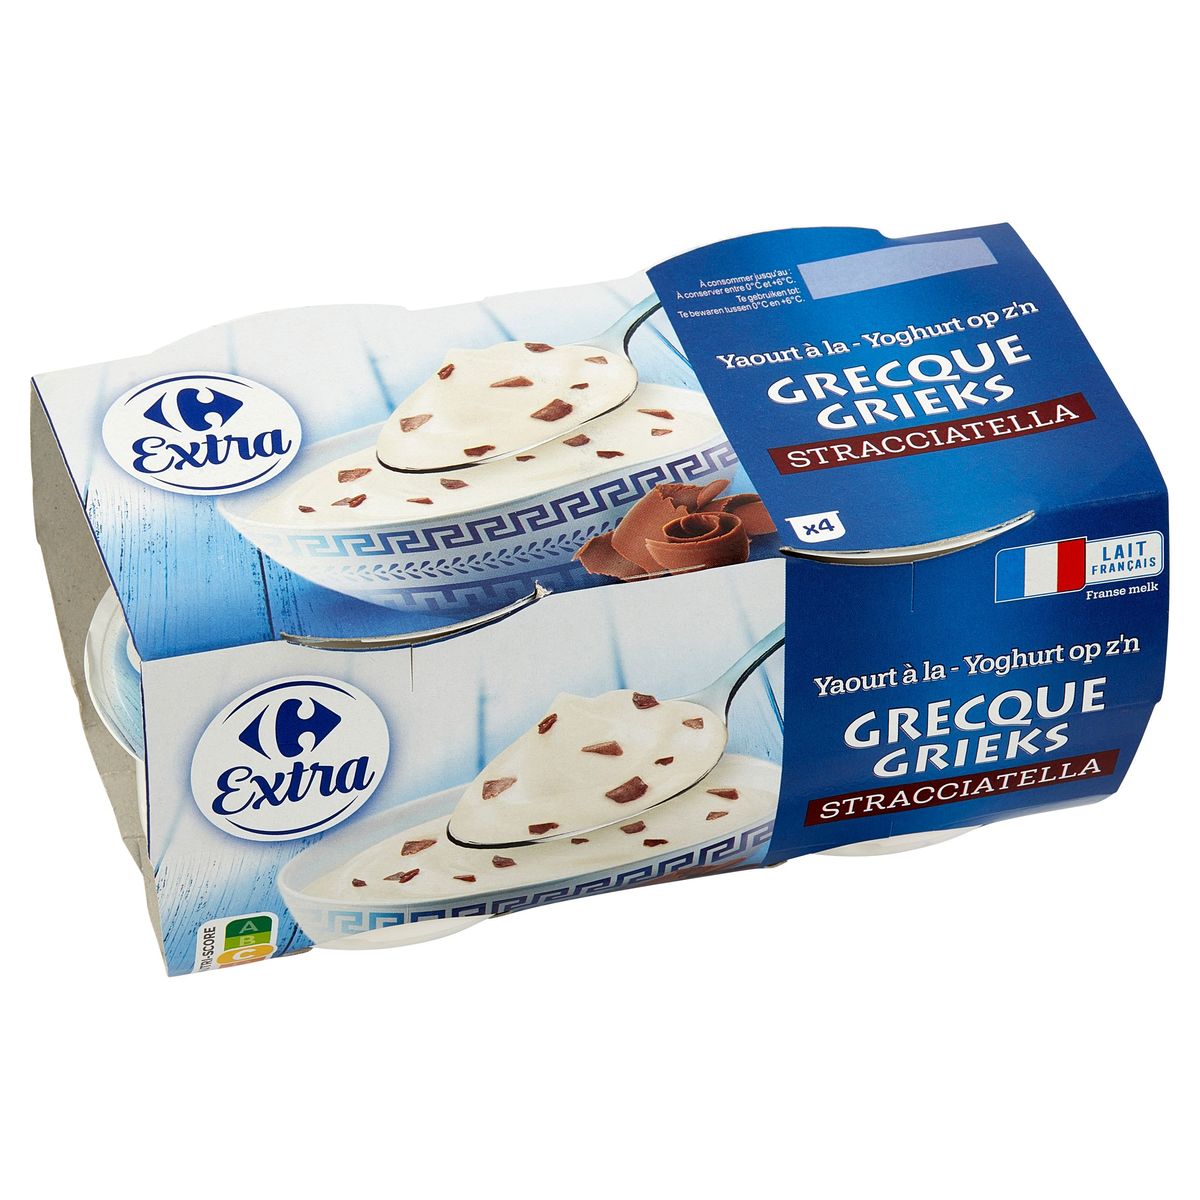 Carrefour Extra Yoghurt op z'n Grieks Stracciatella 4 x 150 g